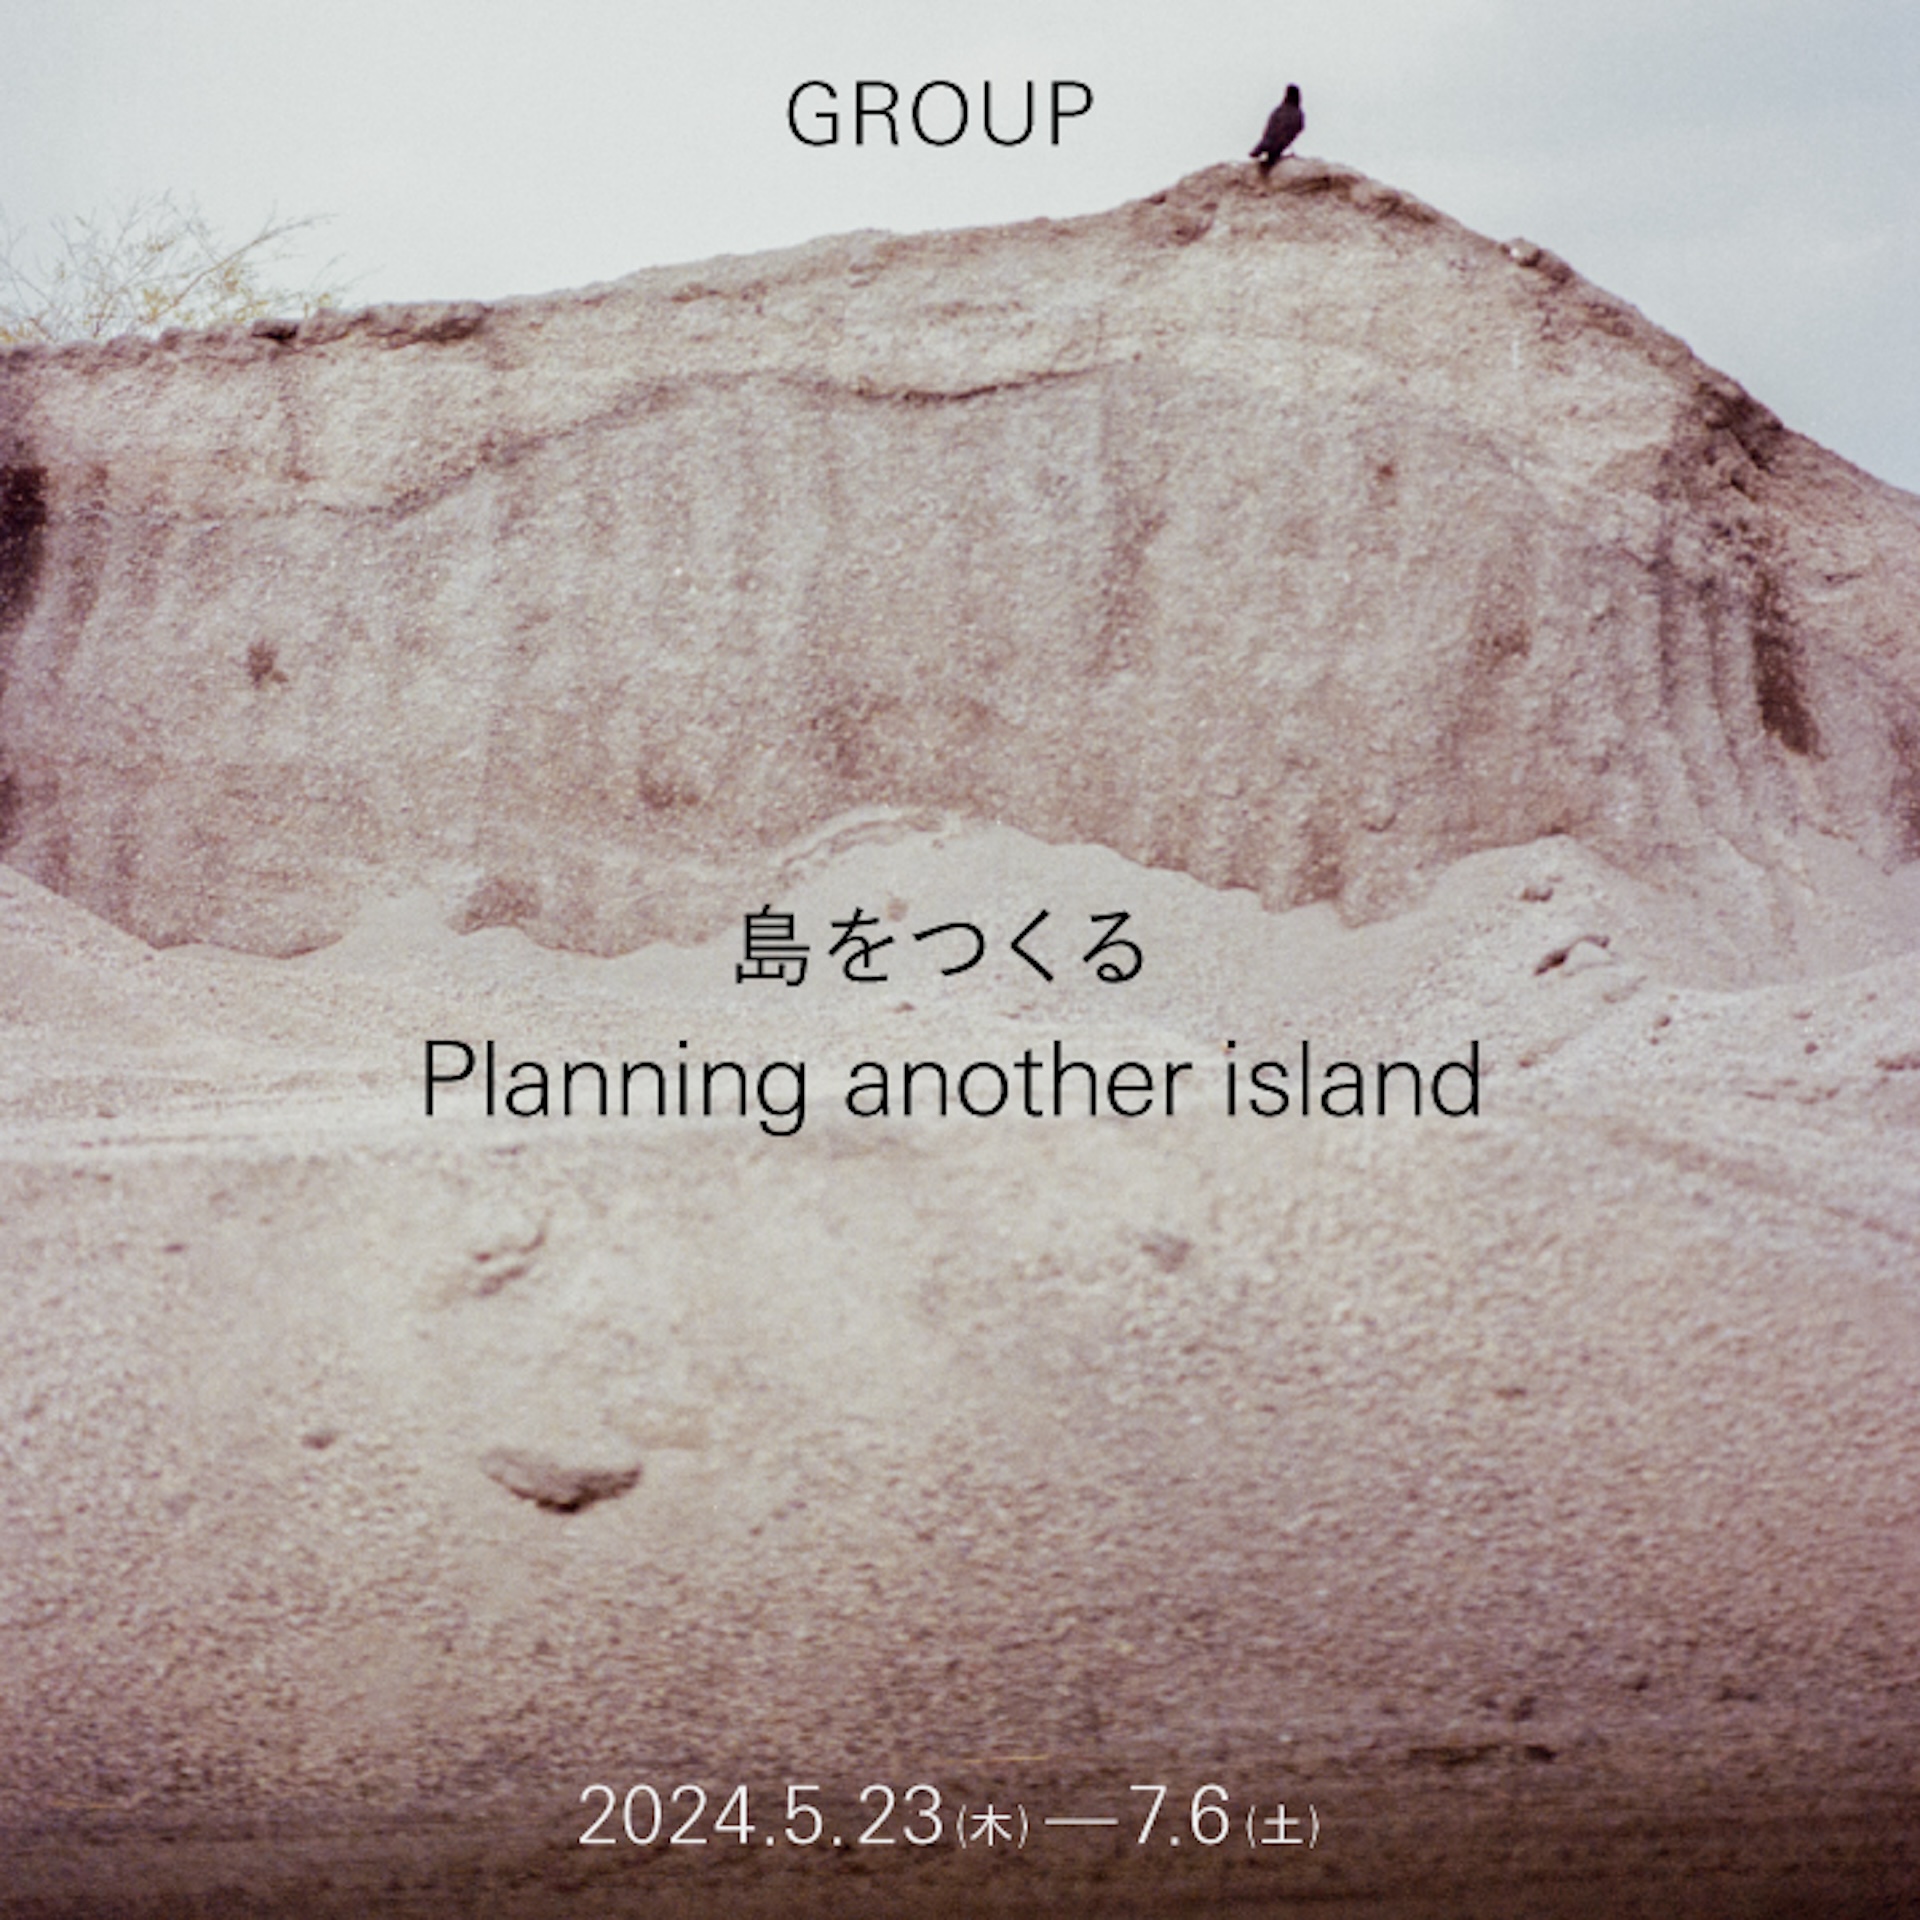 建築コレクティブのGROUPによる個展『島をつくる｜Planning Another Island』本日より銀座・マイナビアートスクエアにて開催 artculture240523-planning-another-island3